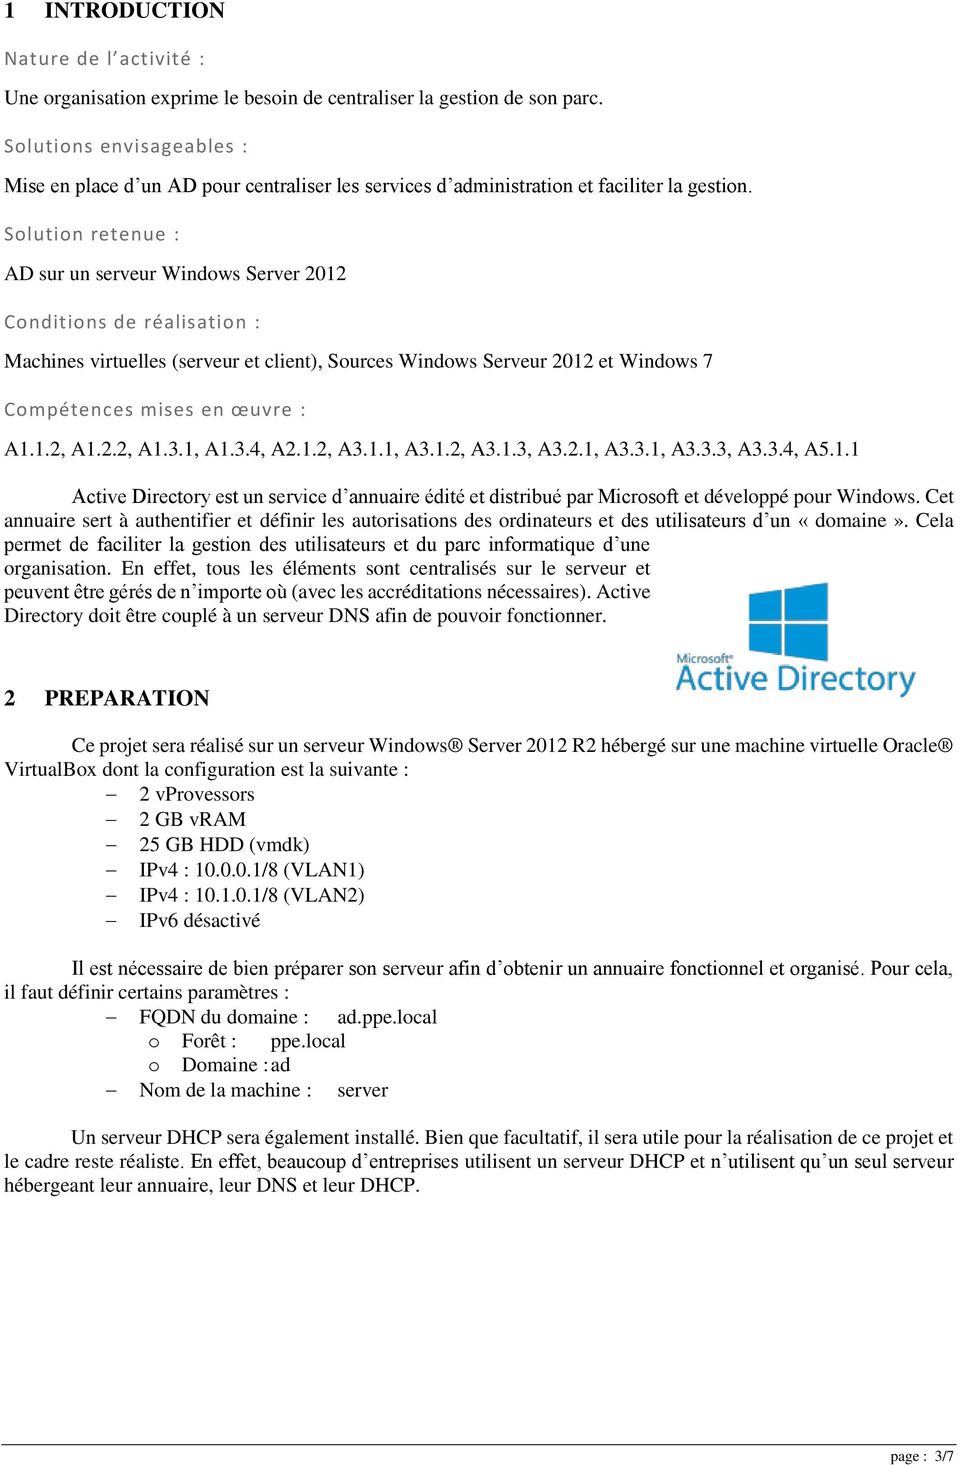 Solution retenue : AD sur un serveur Windows Server 2012 Conditions de réalisation : Machines virtuelles (serveur et client), Sources Windows Serveur 2012 et Windows 7 Compétences mises en œuvre : A1.